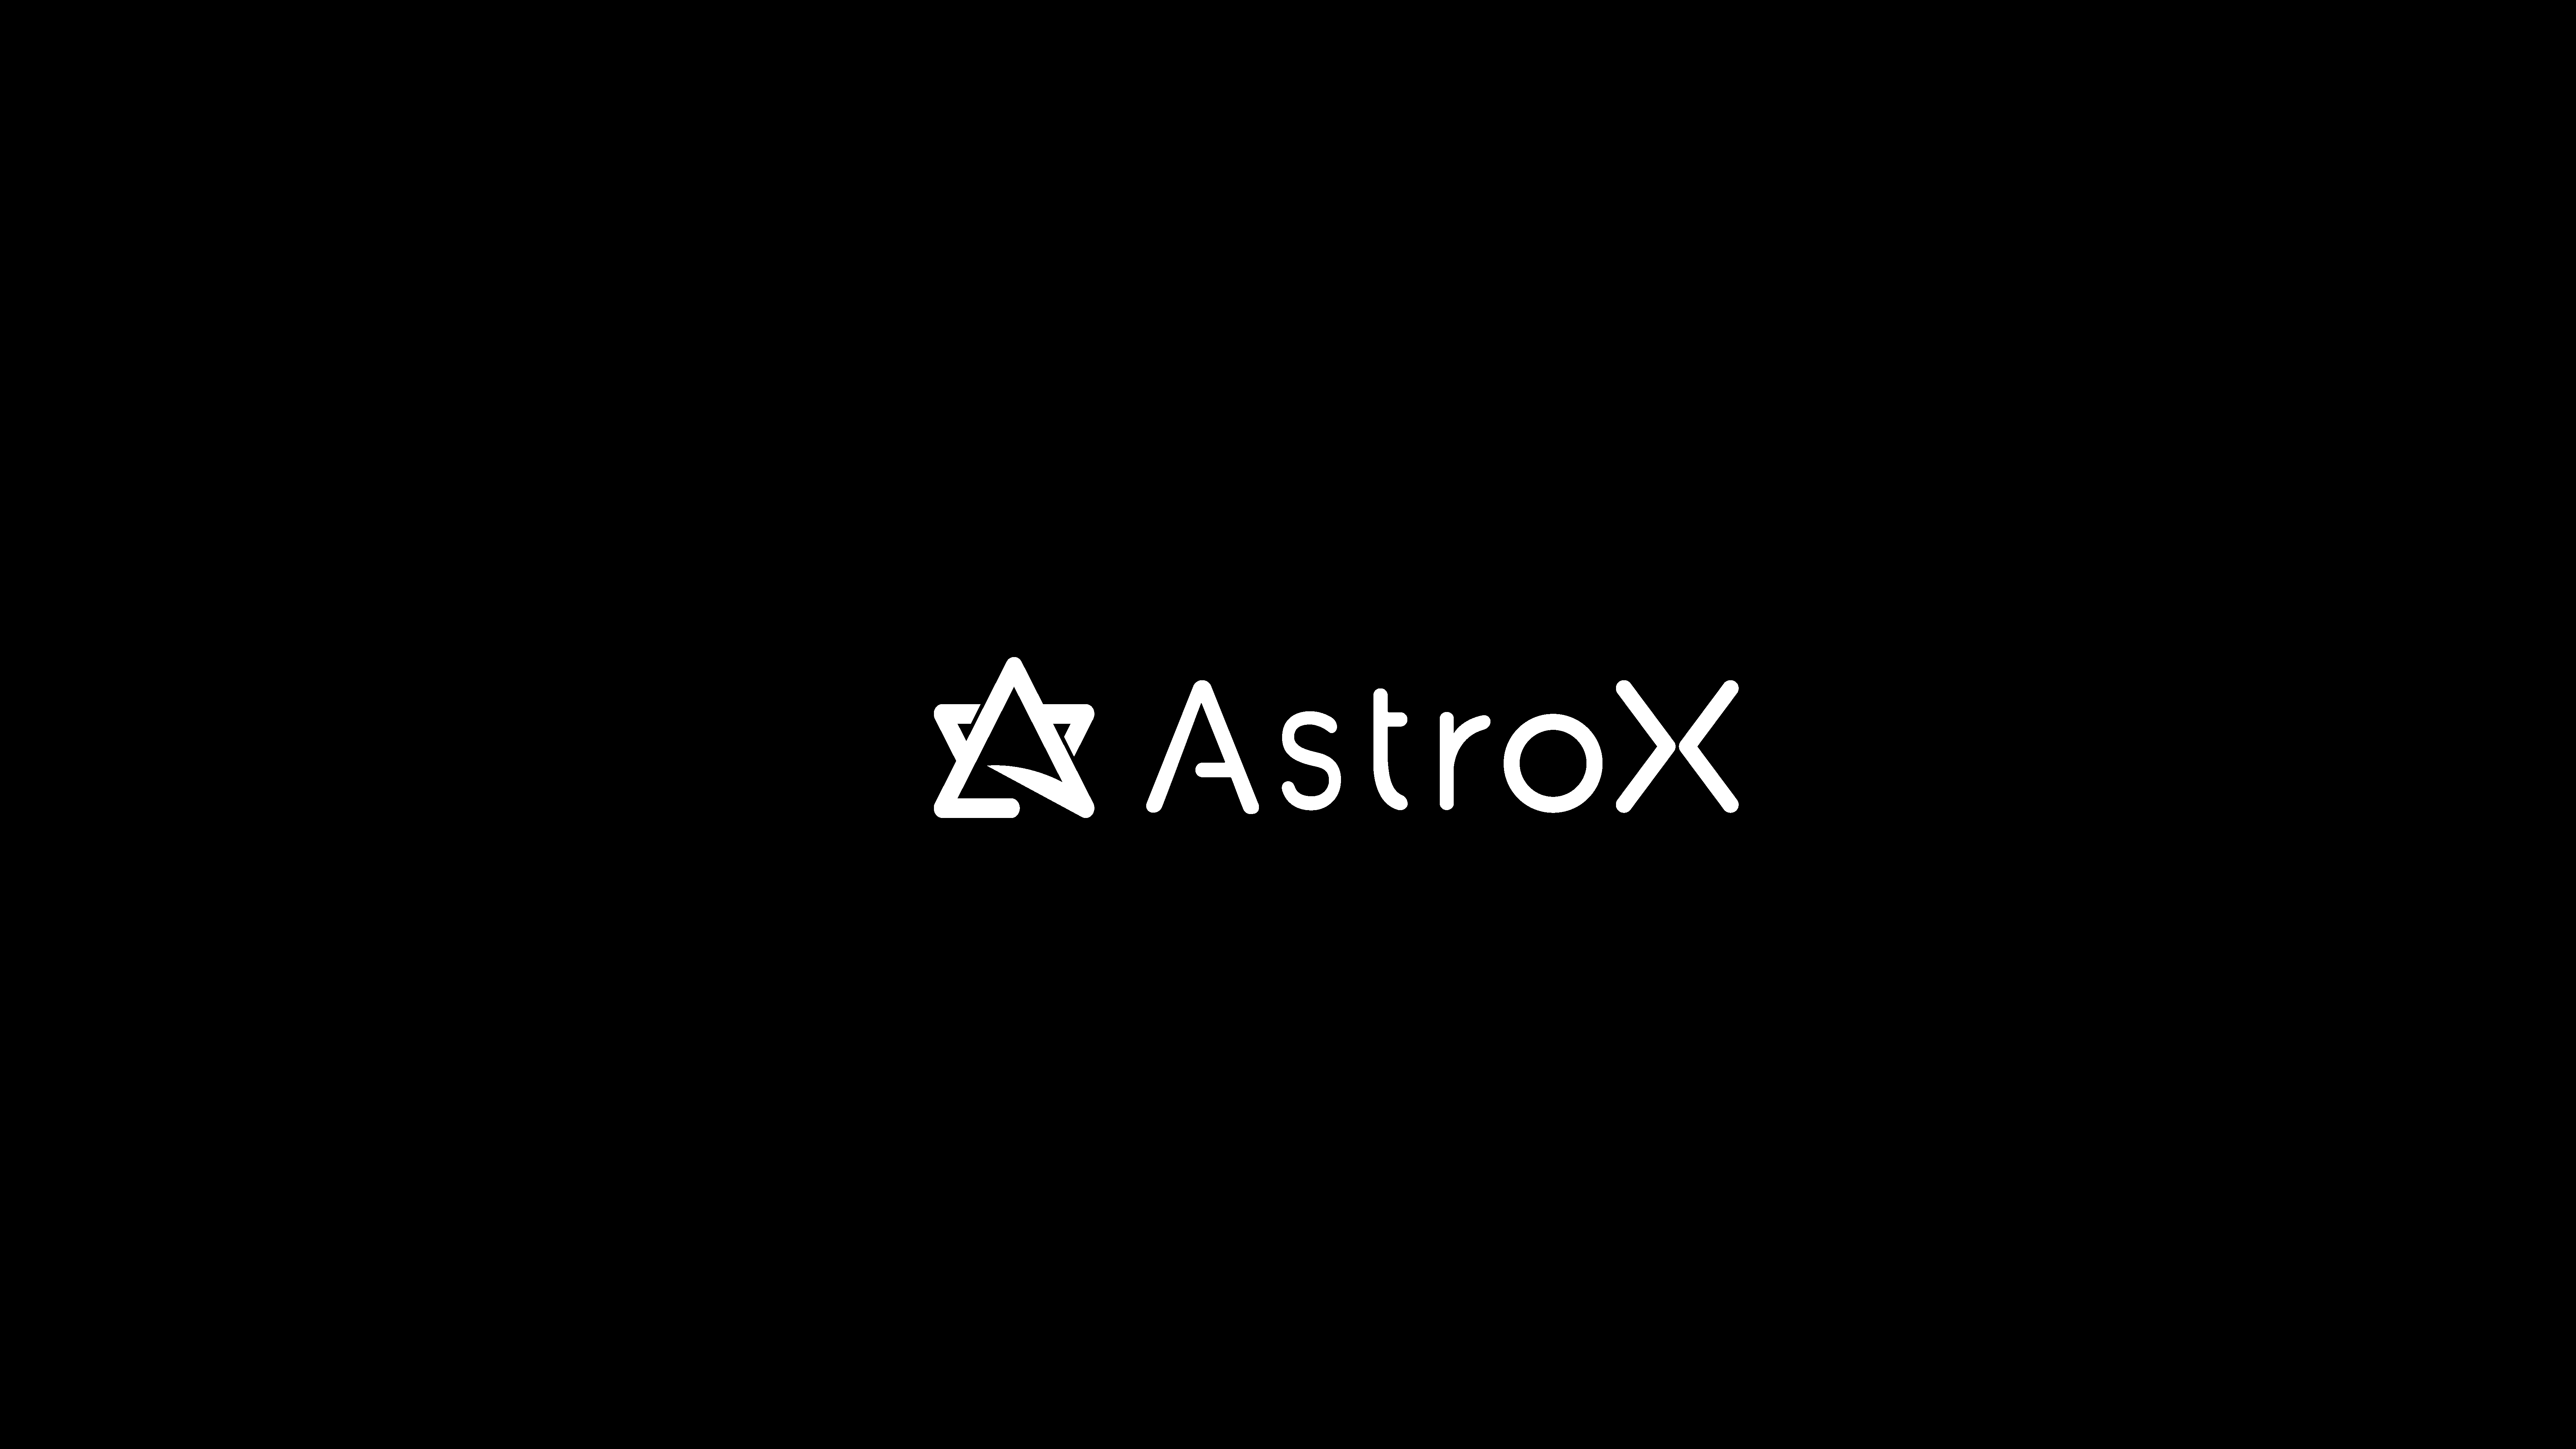 民間宇宙スタートアップ Astrox アストロエックス 設立のお知らせ Astrox株式会社のプレスリリース